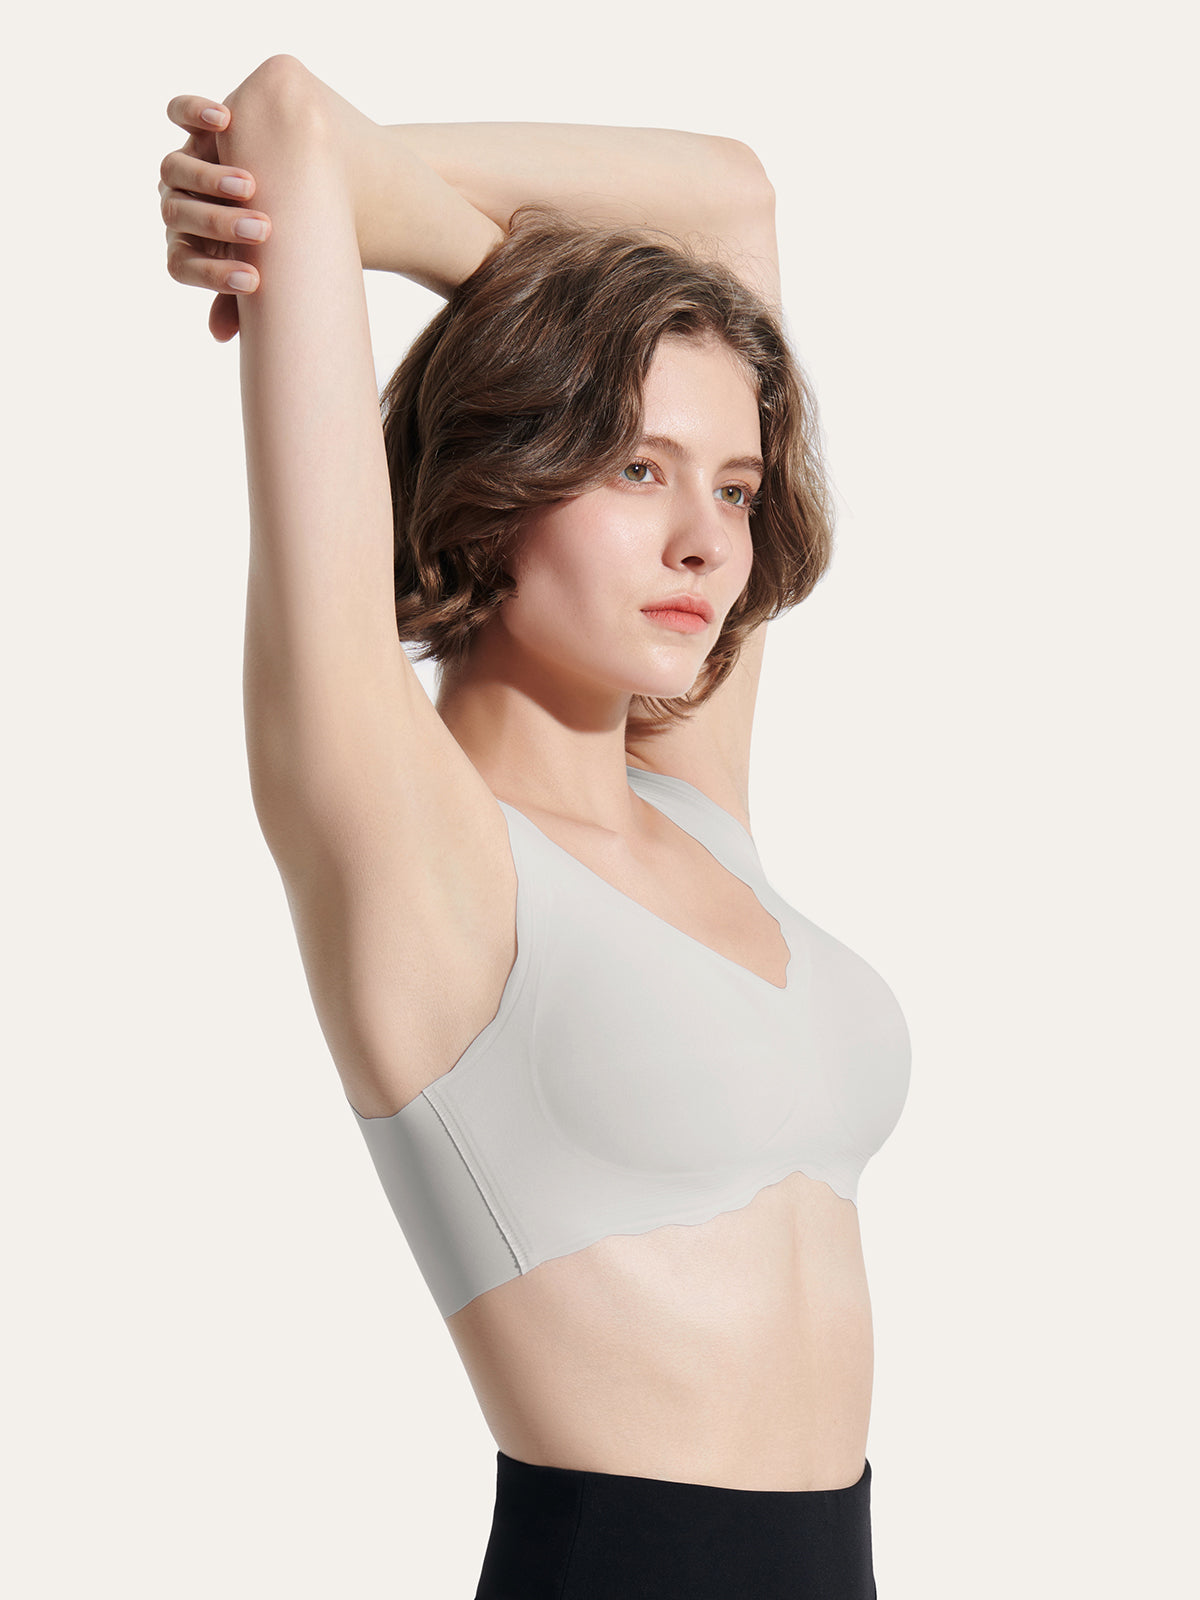 DYTTDO Women's 24-hour Effortless Pressure Free bras Woman's